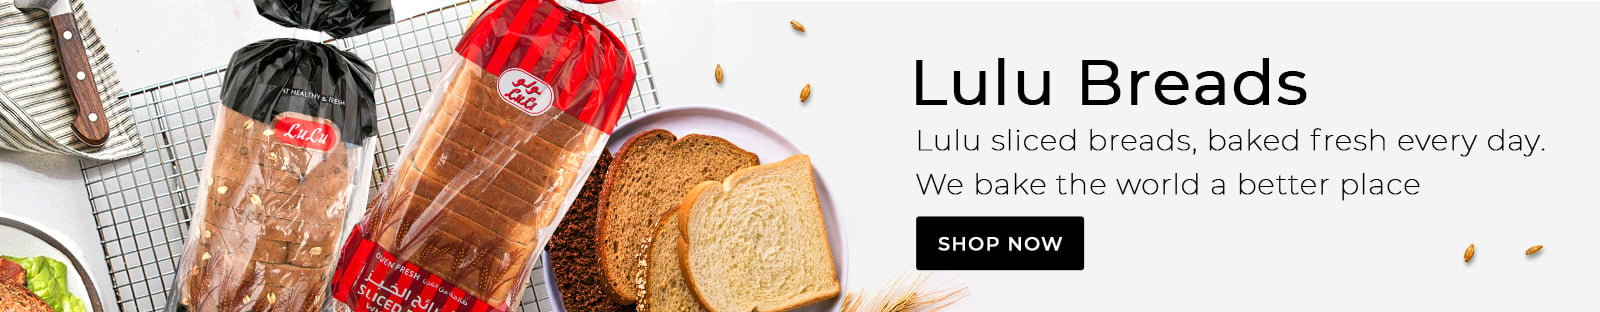 LuLu Bread 001